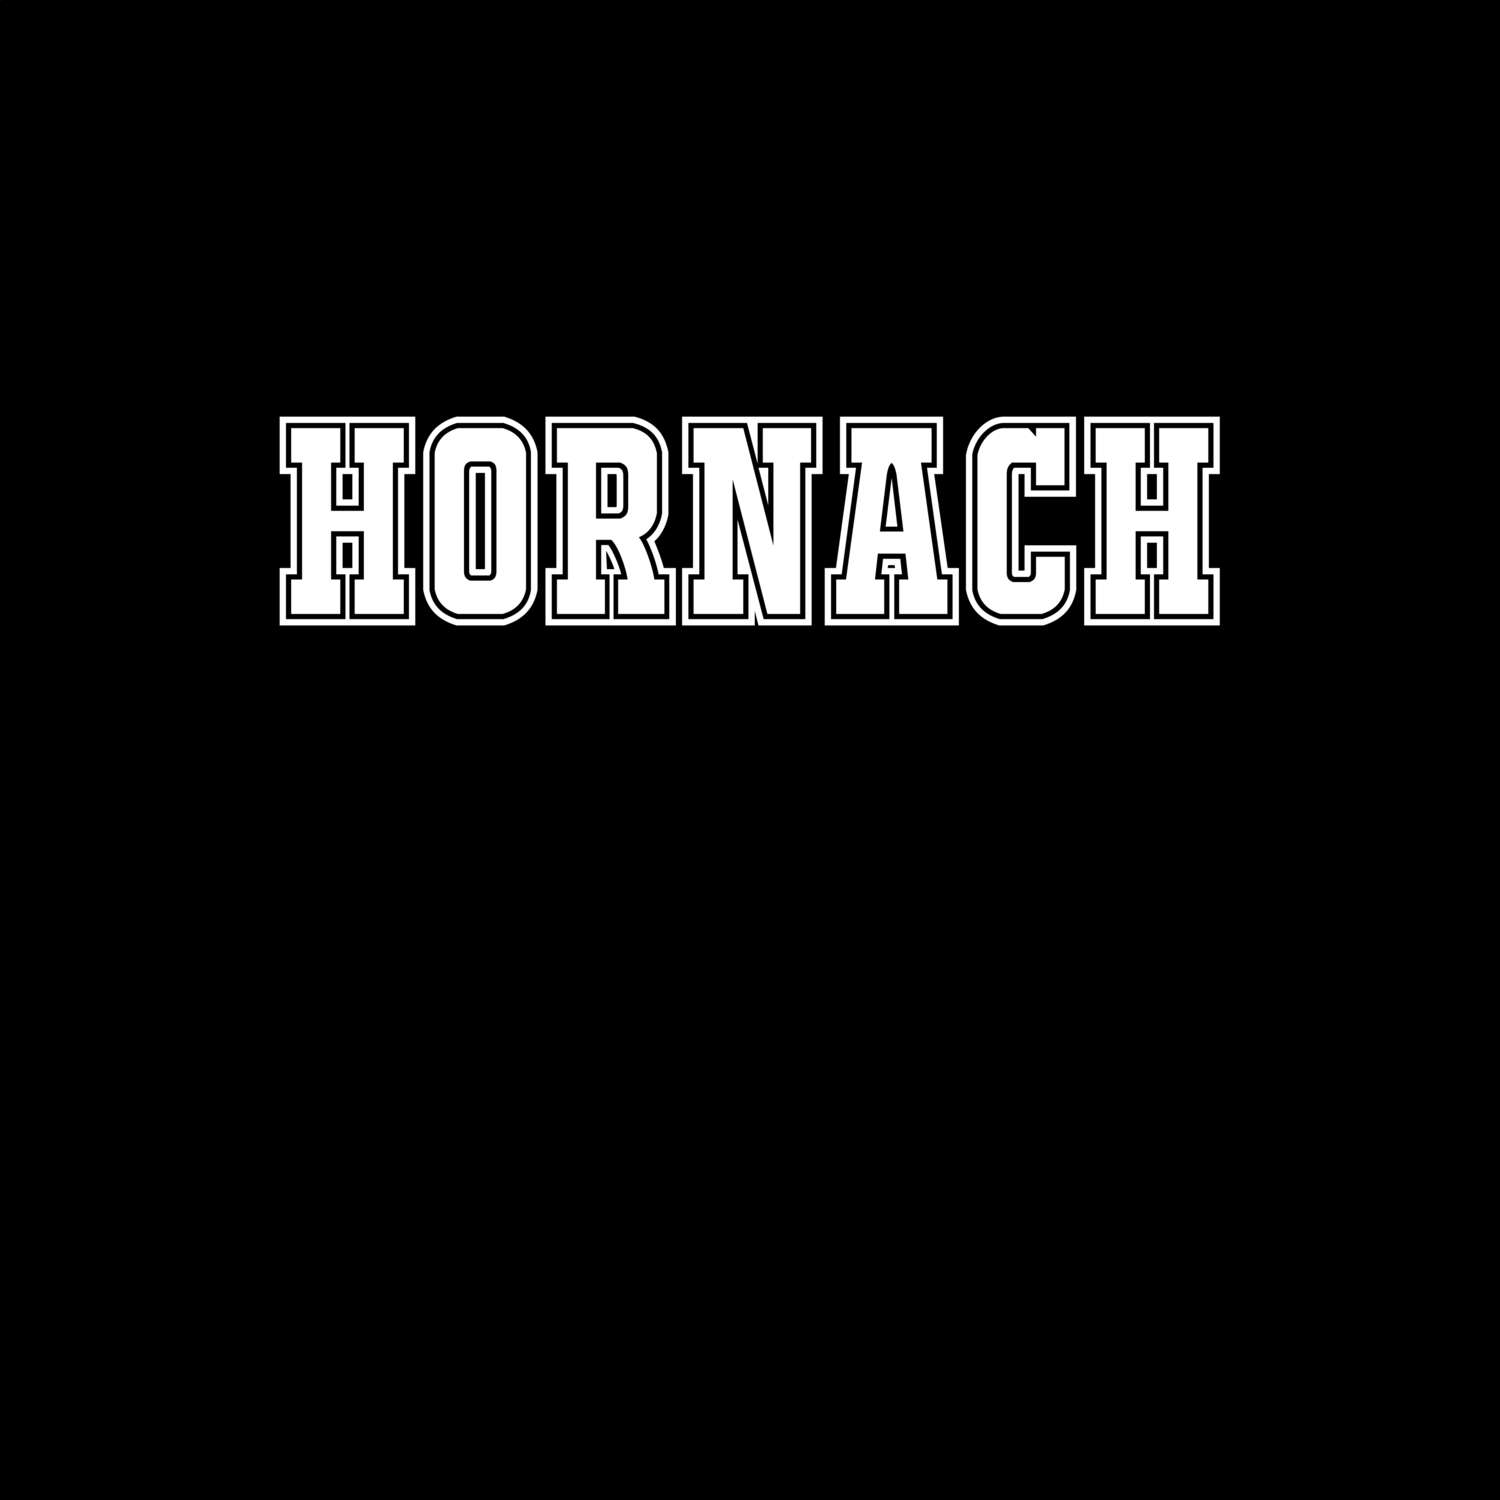 Hornach T-Shirt »Classic«